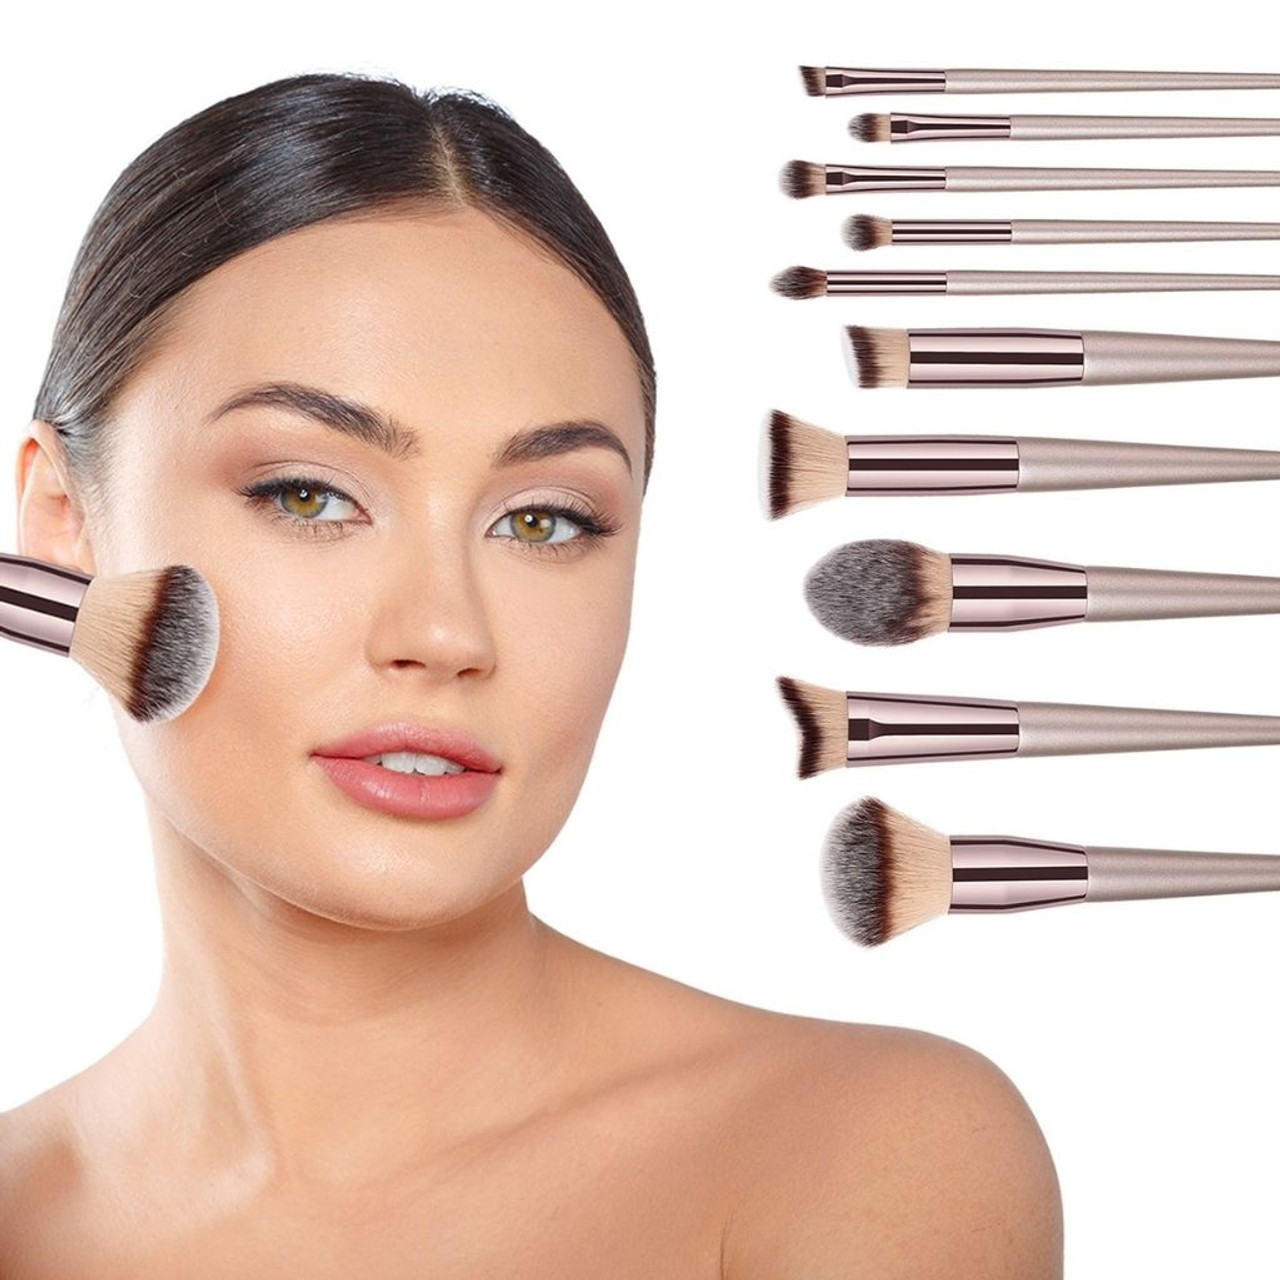 10-Piece Professional Makeup Brush Set product image